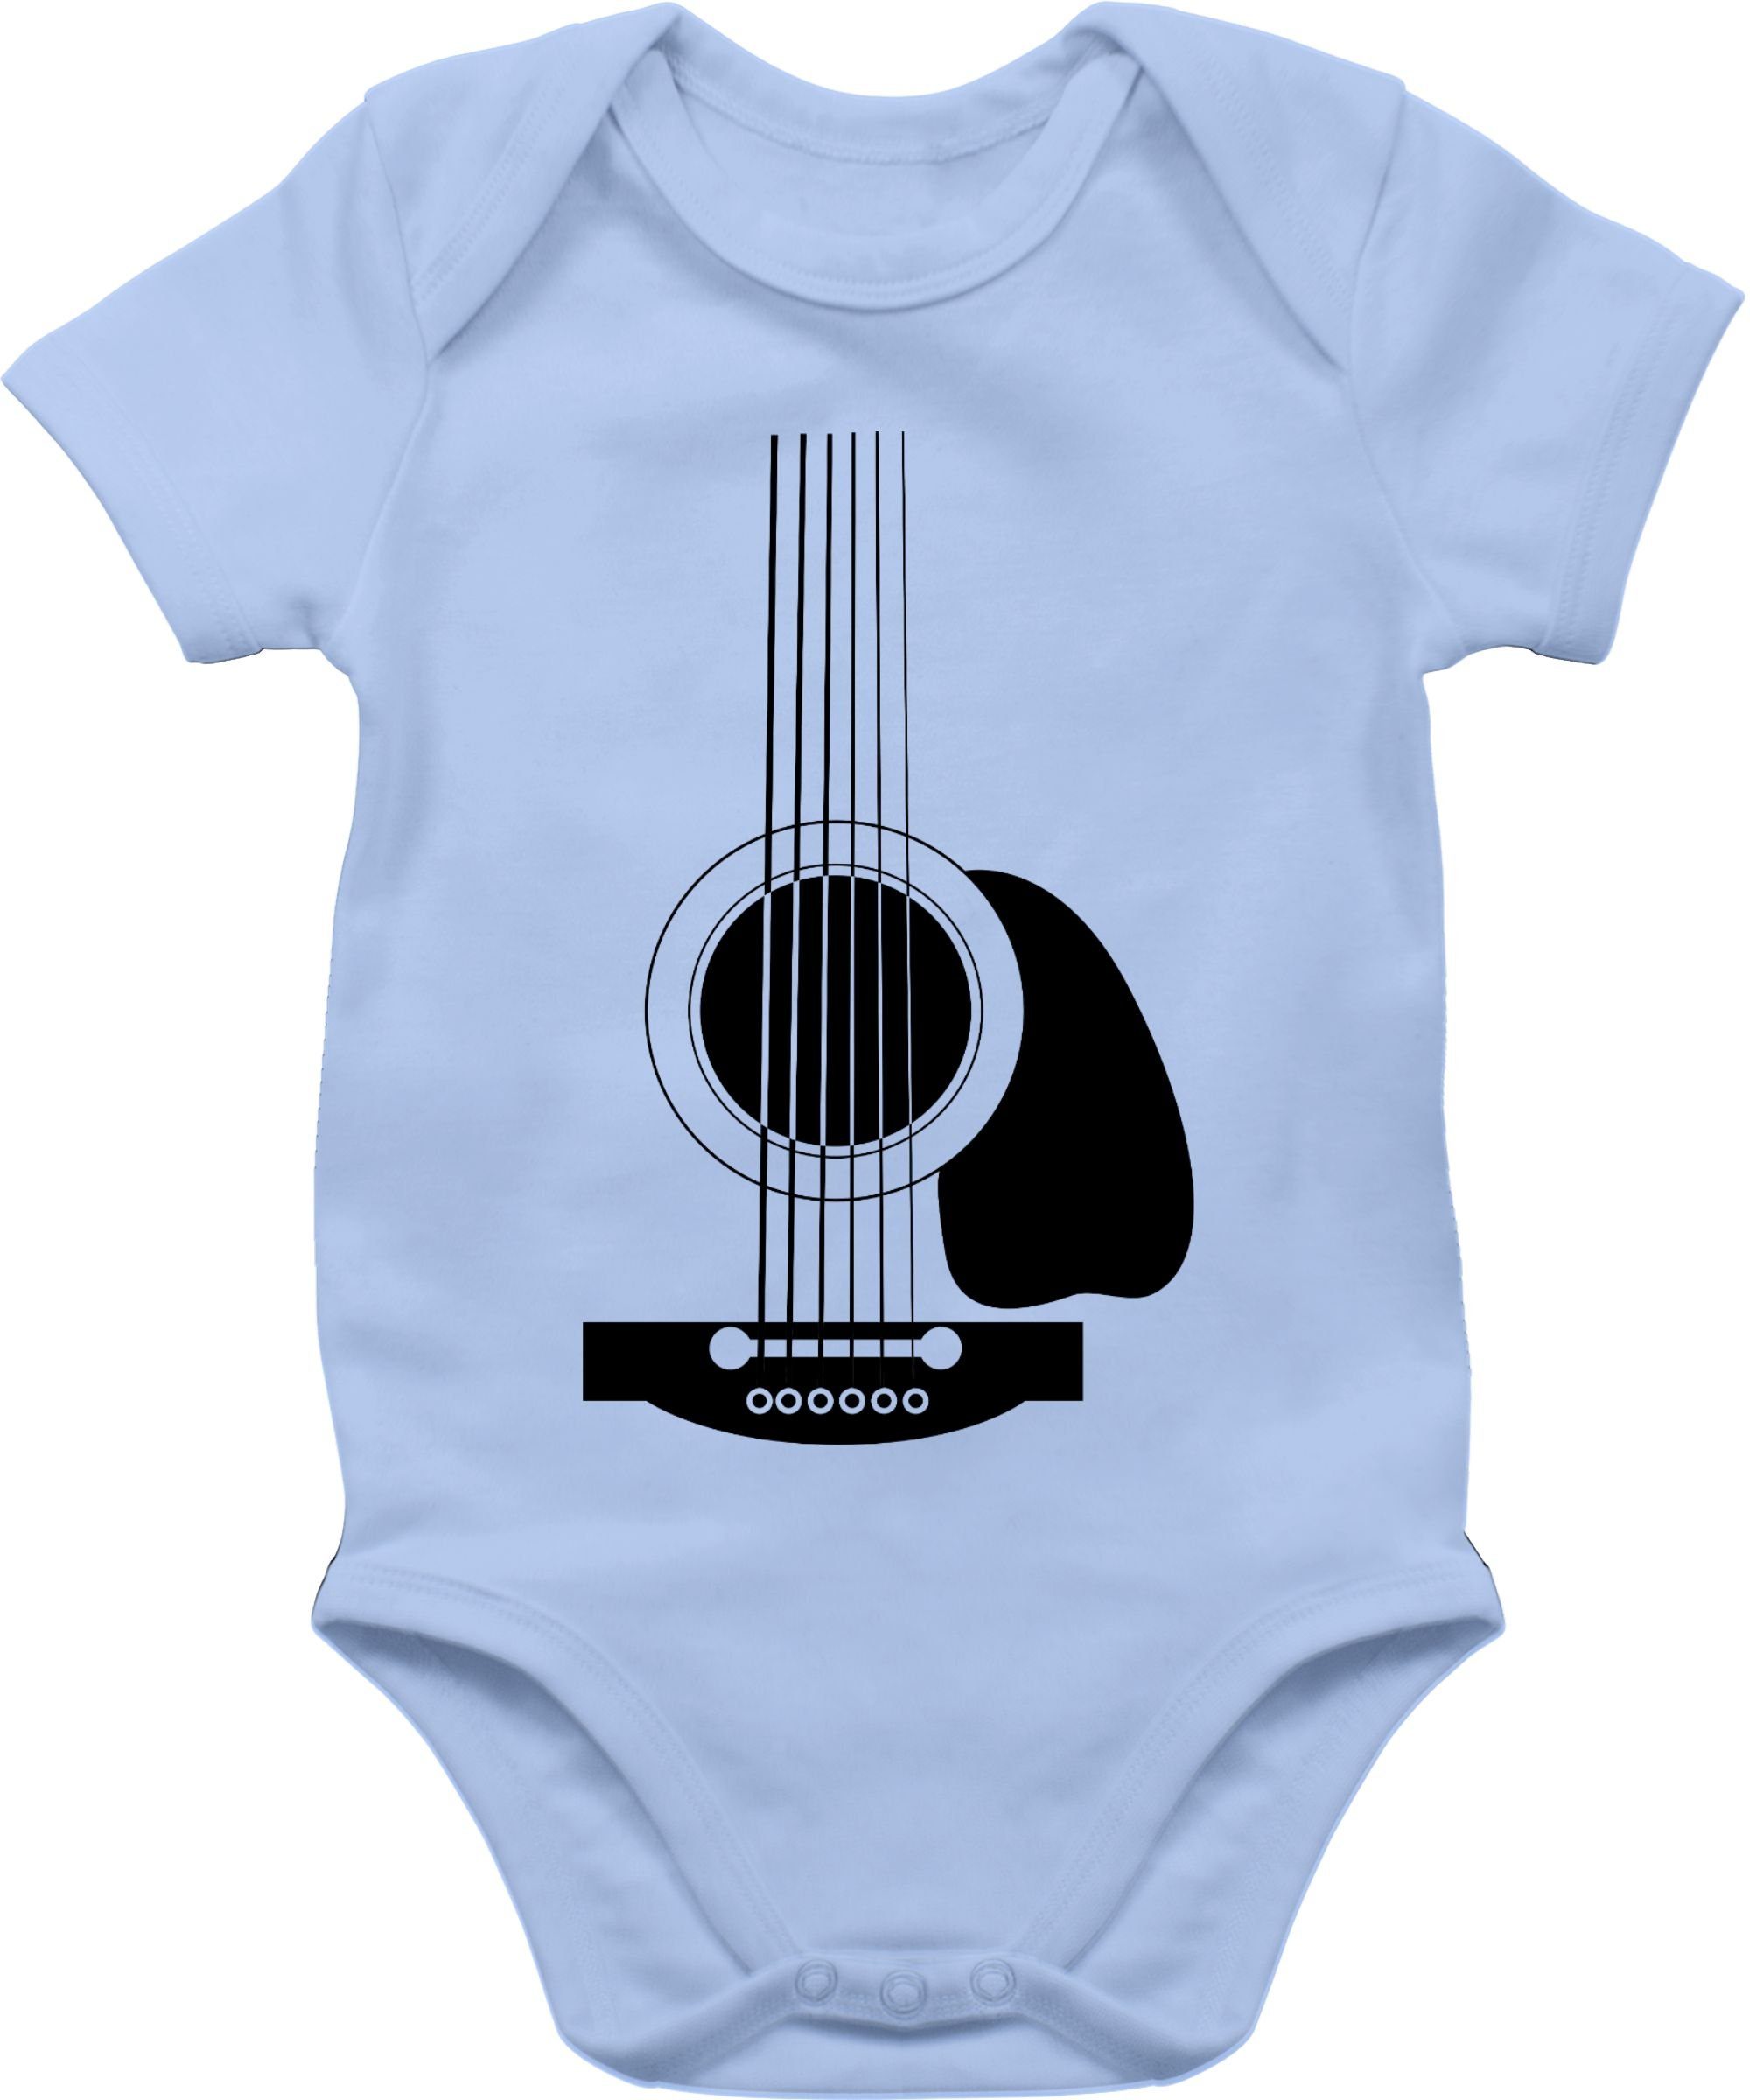 Shirtracer Shirtbody Gitarren Body Baby Junge Babyblau Strampler 2 & Mädchen